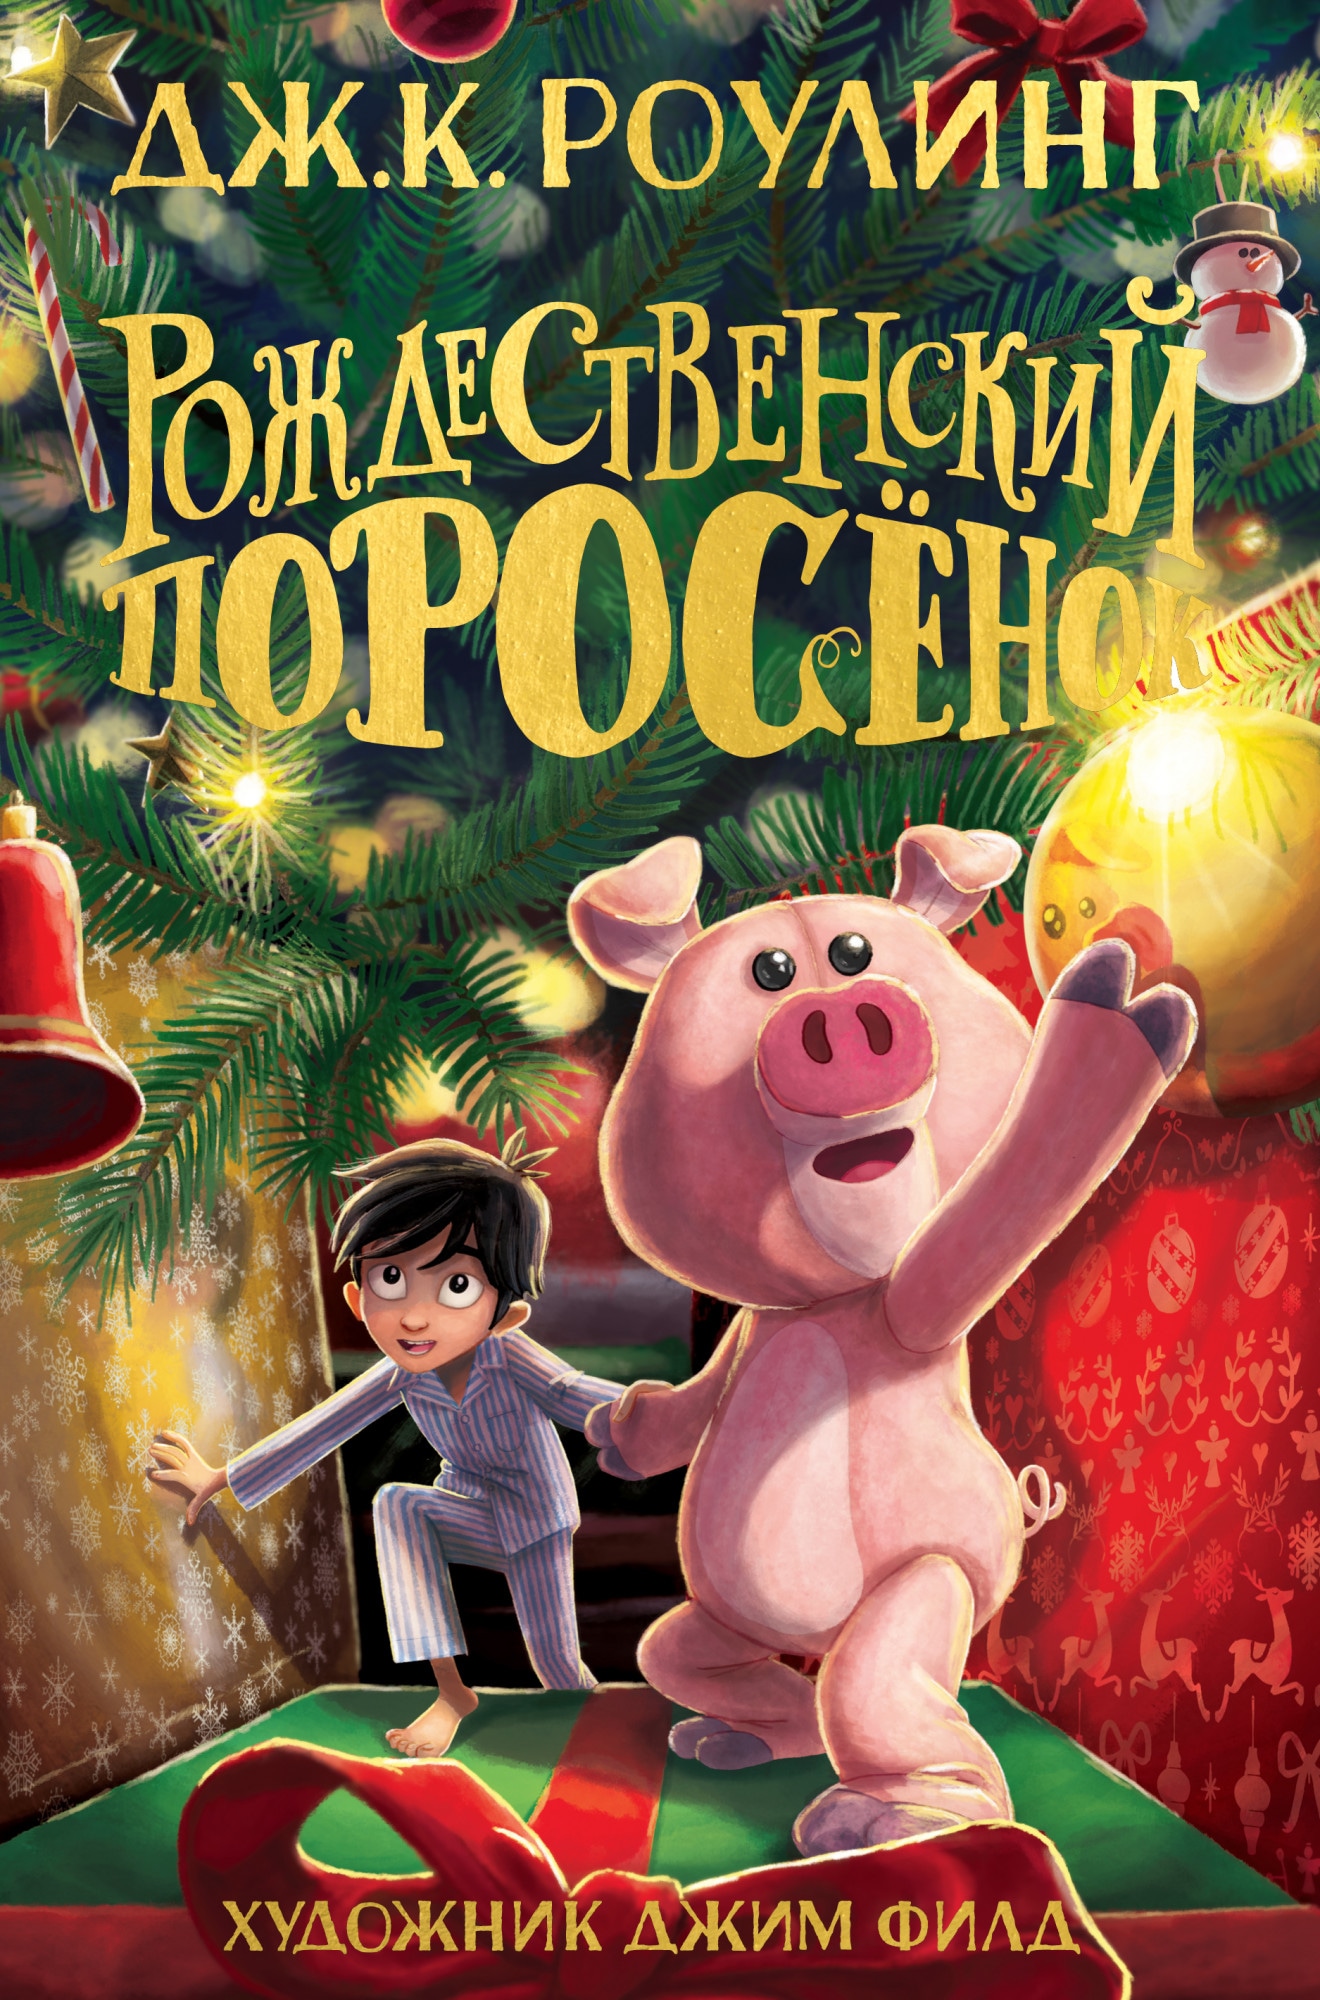 Book “Рождественский Поросёнок” by Дж.К. Роулинг — October 12, 2021